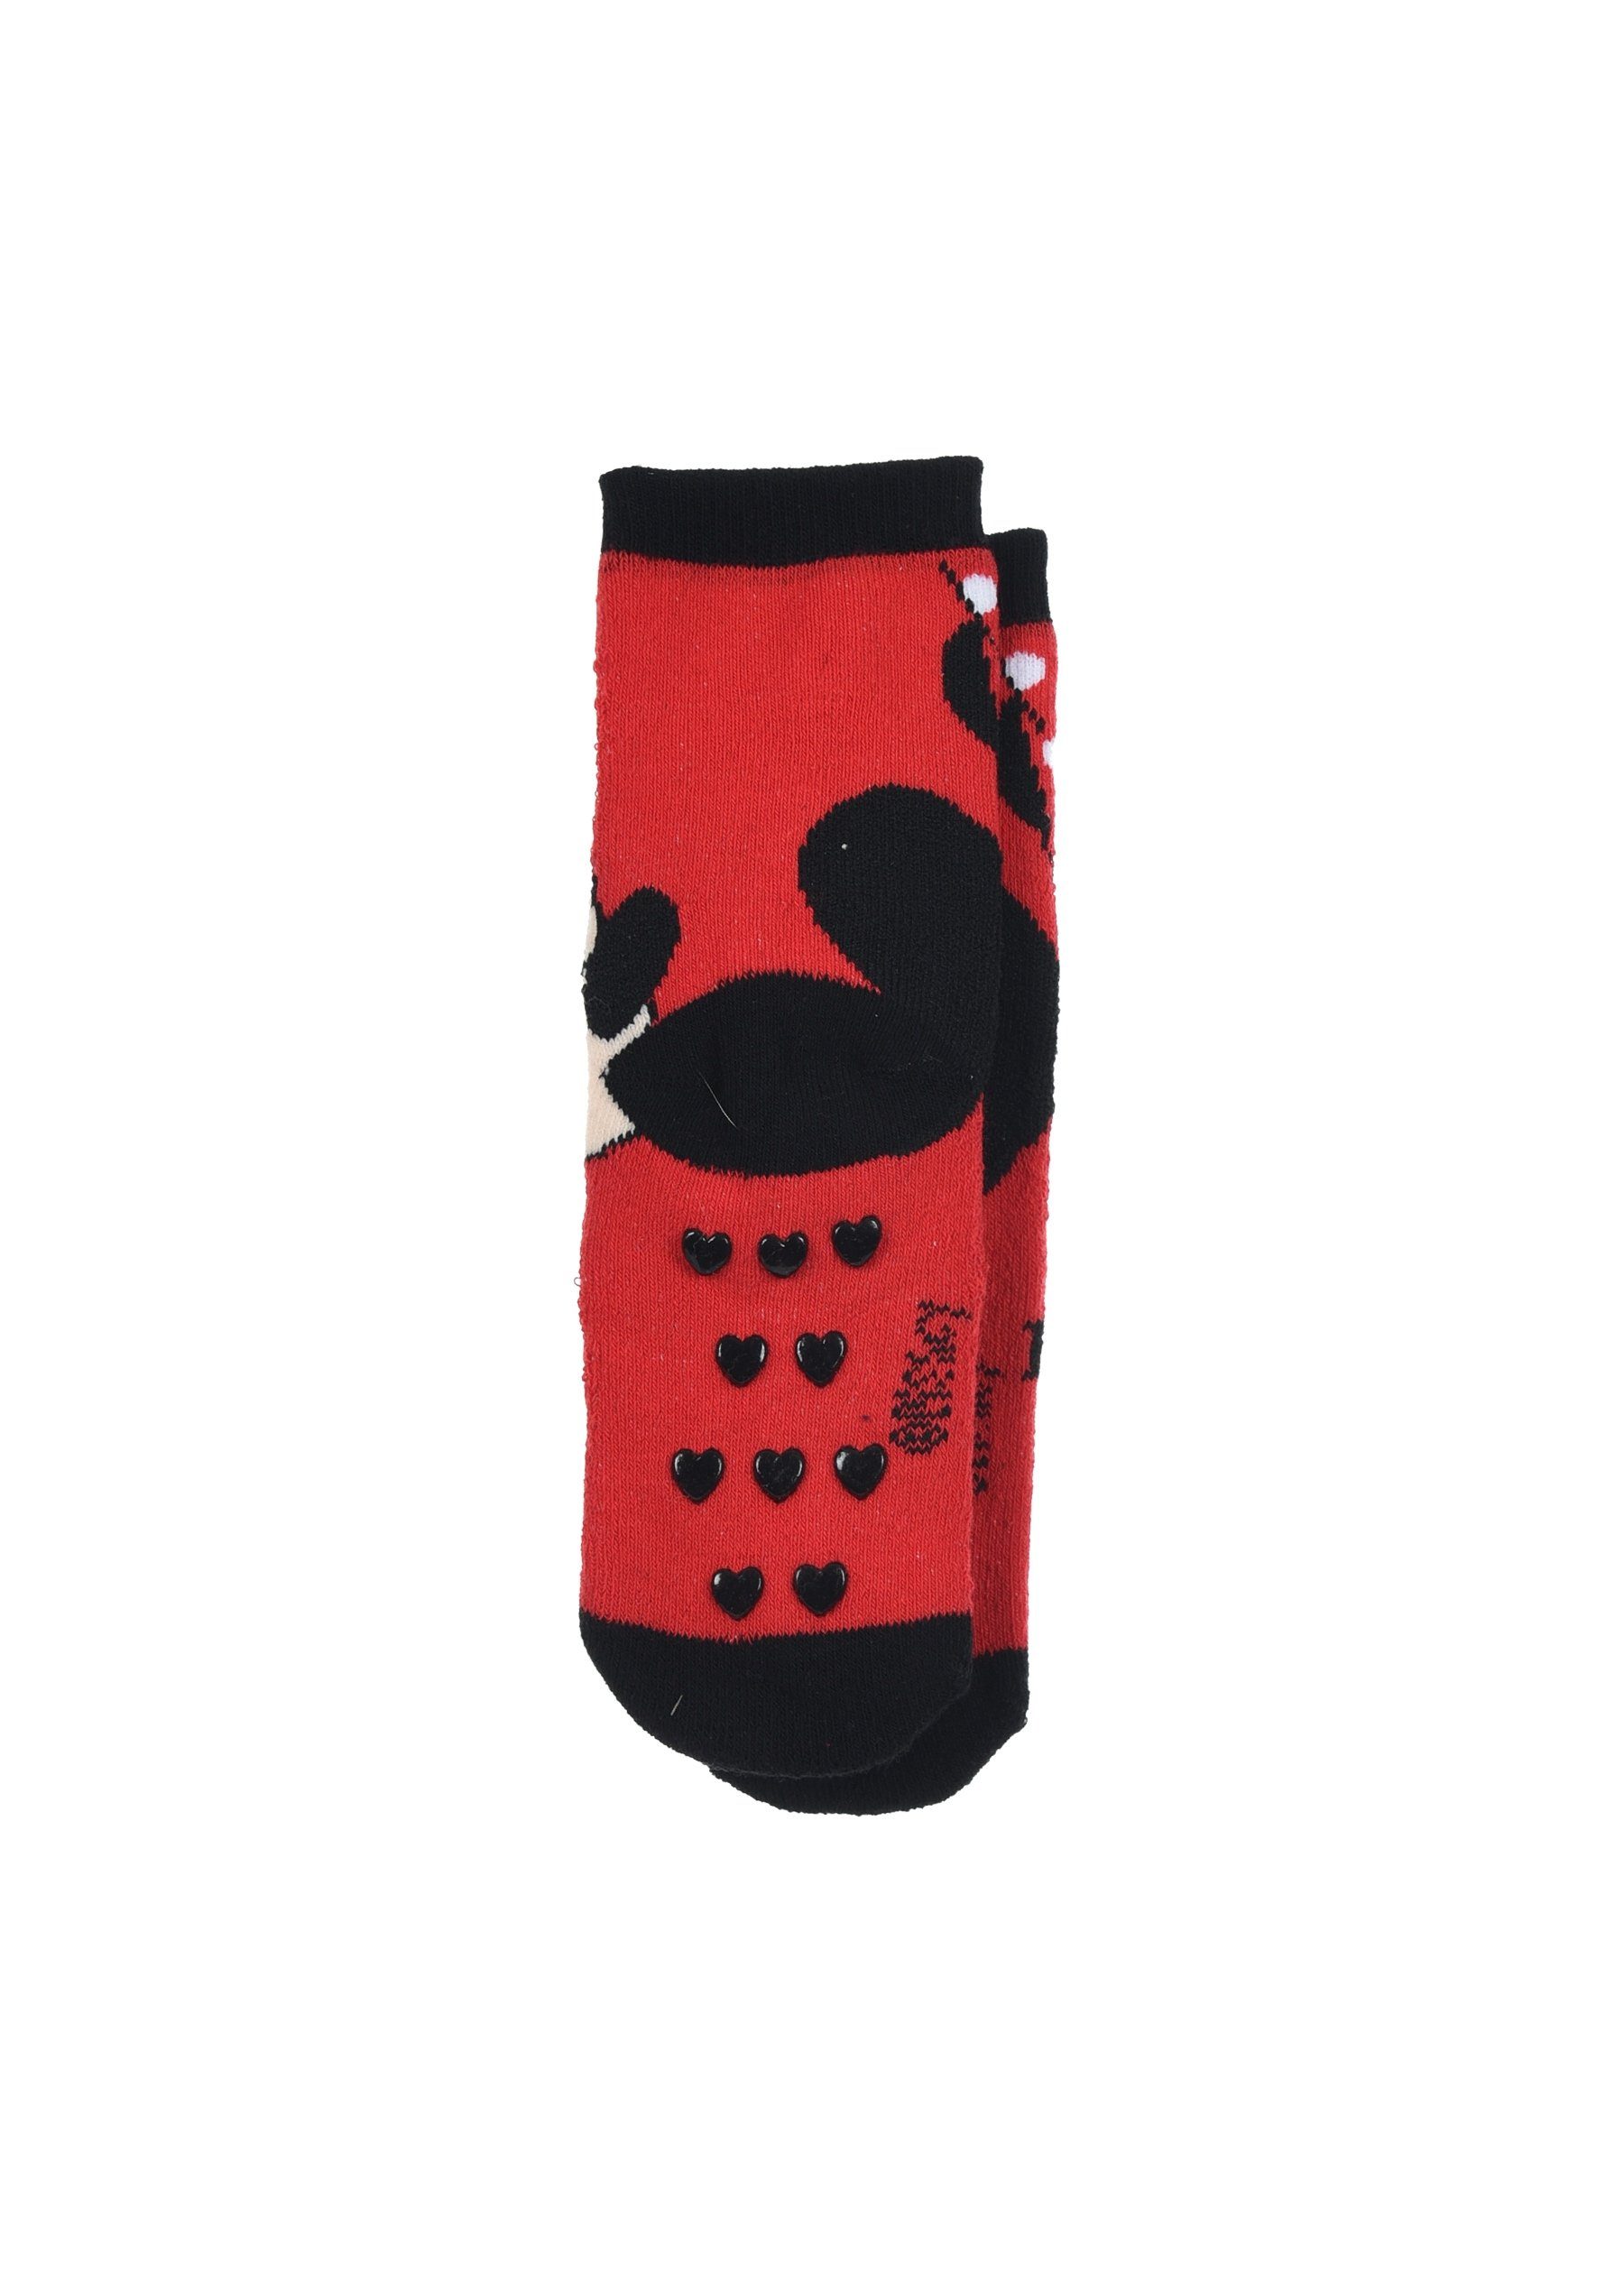 Minnie mit Strümpfe ABS-Socken Disney Socken (2-Paar) Gummi-Noppen Mouse Mädchen Kinder